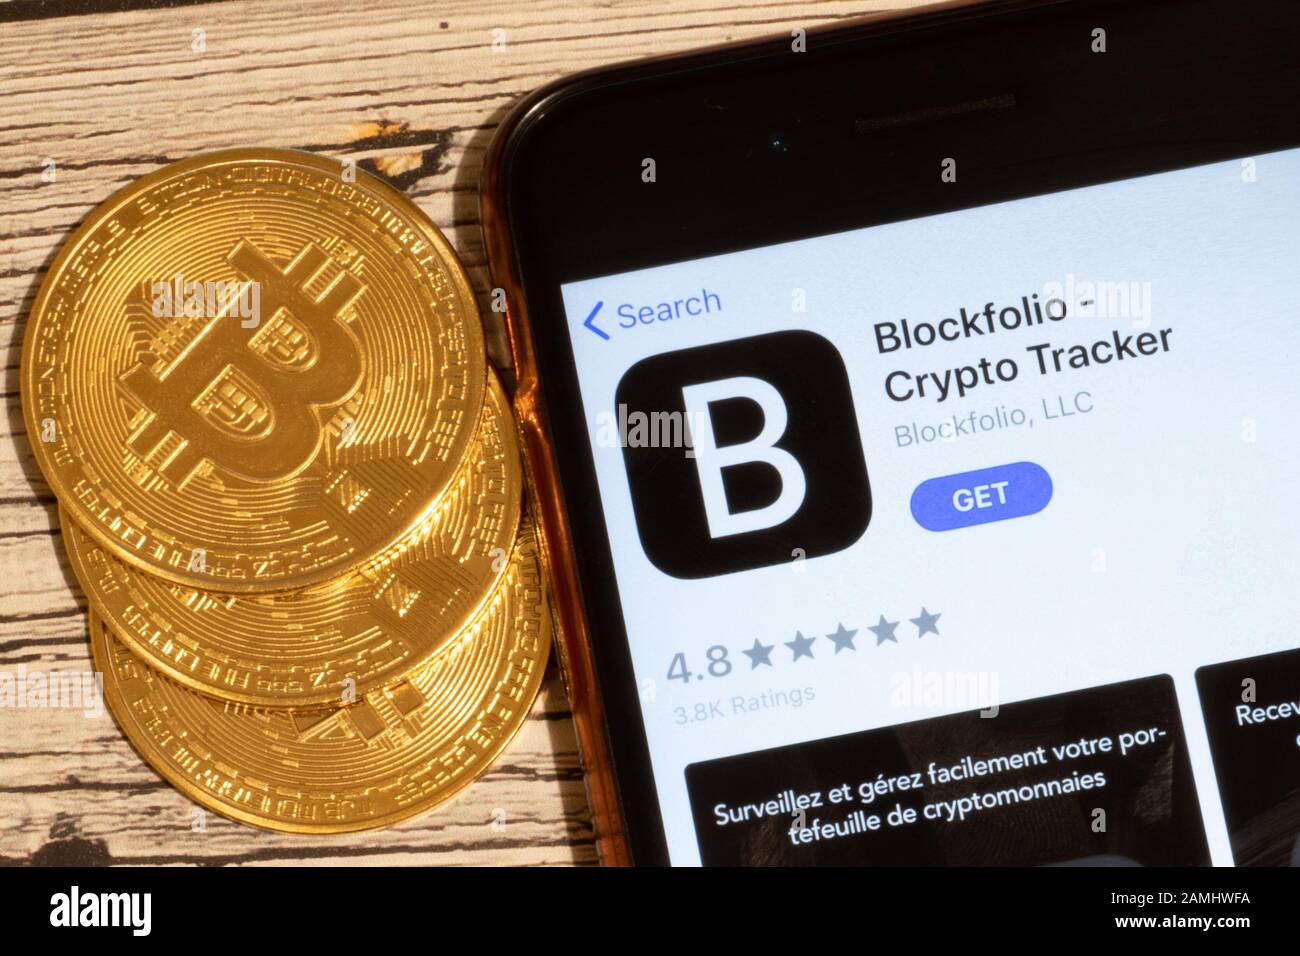 blockfolio app crypto